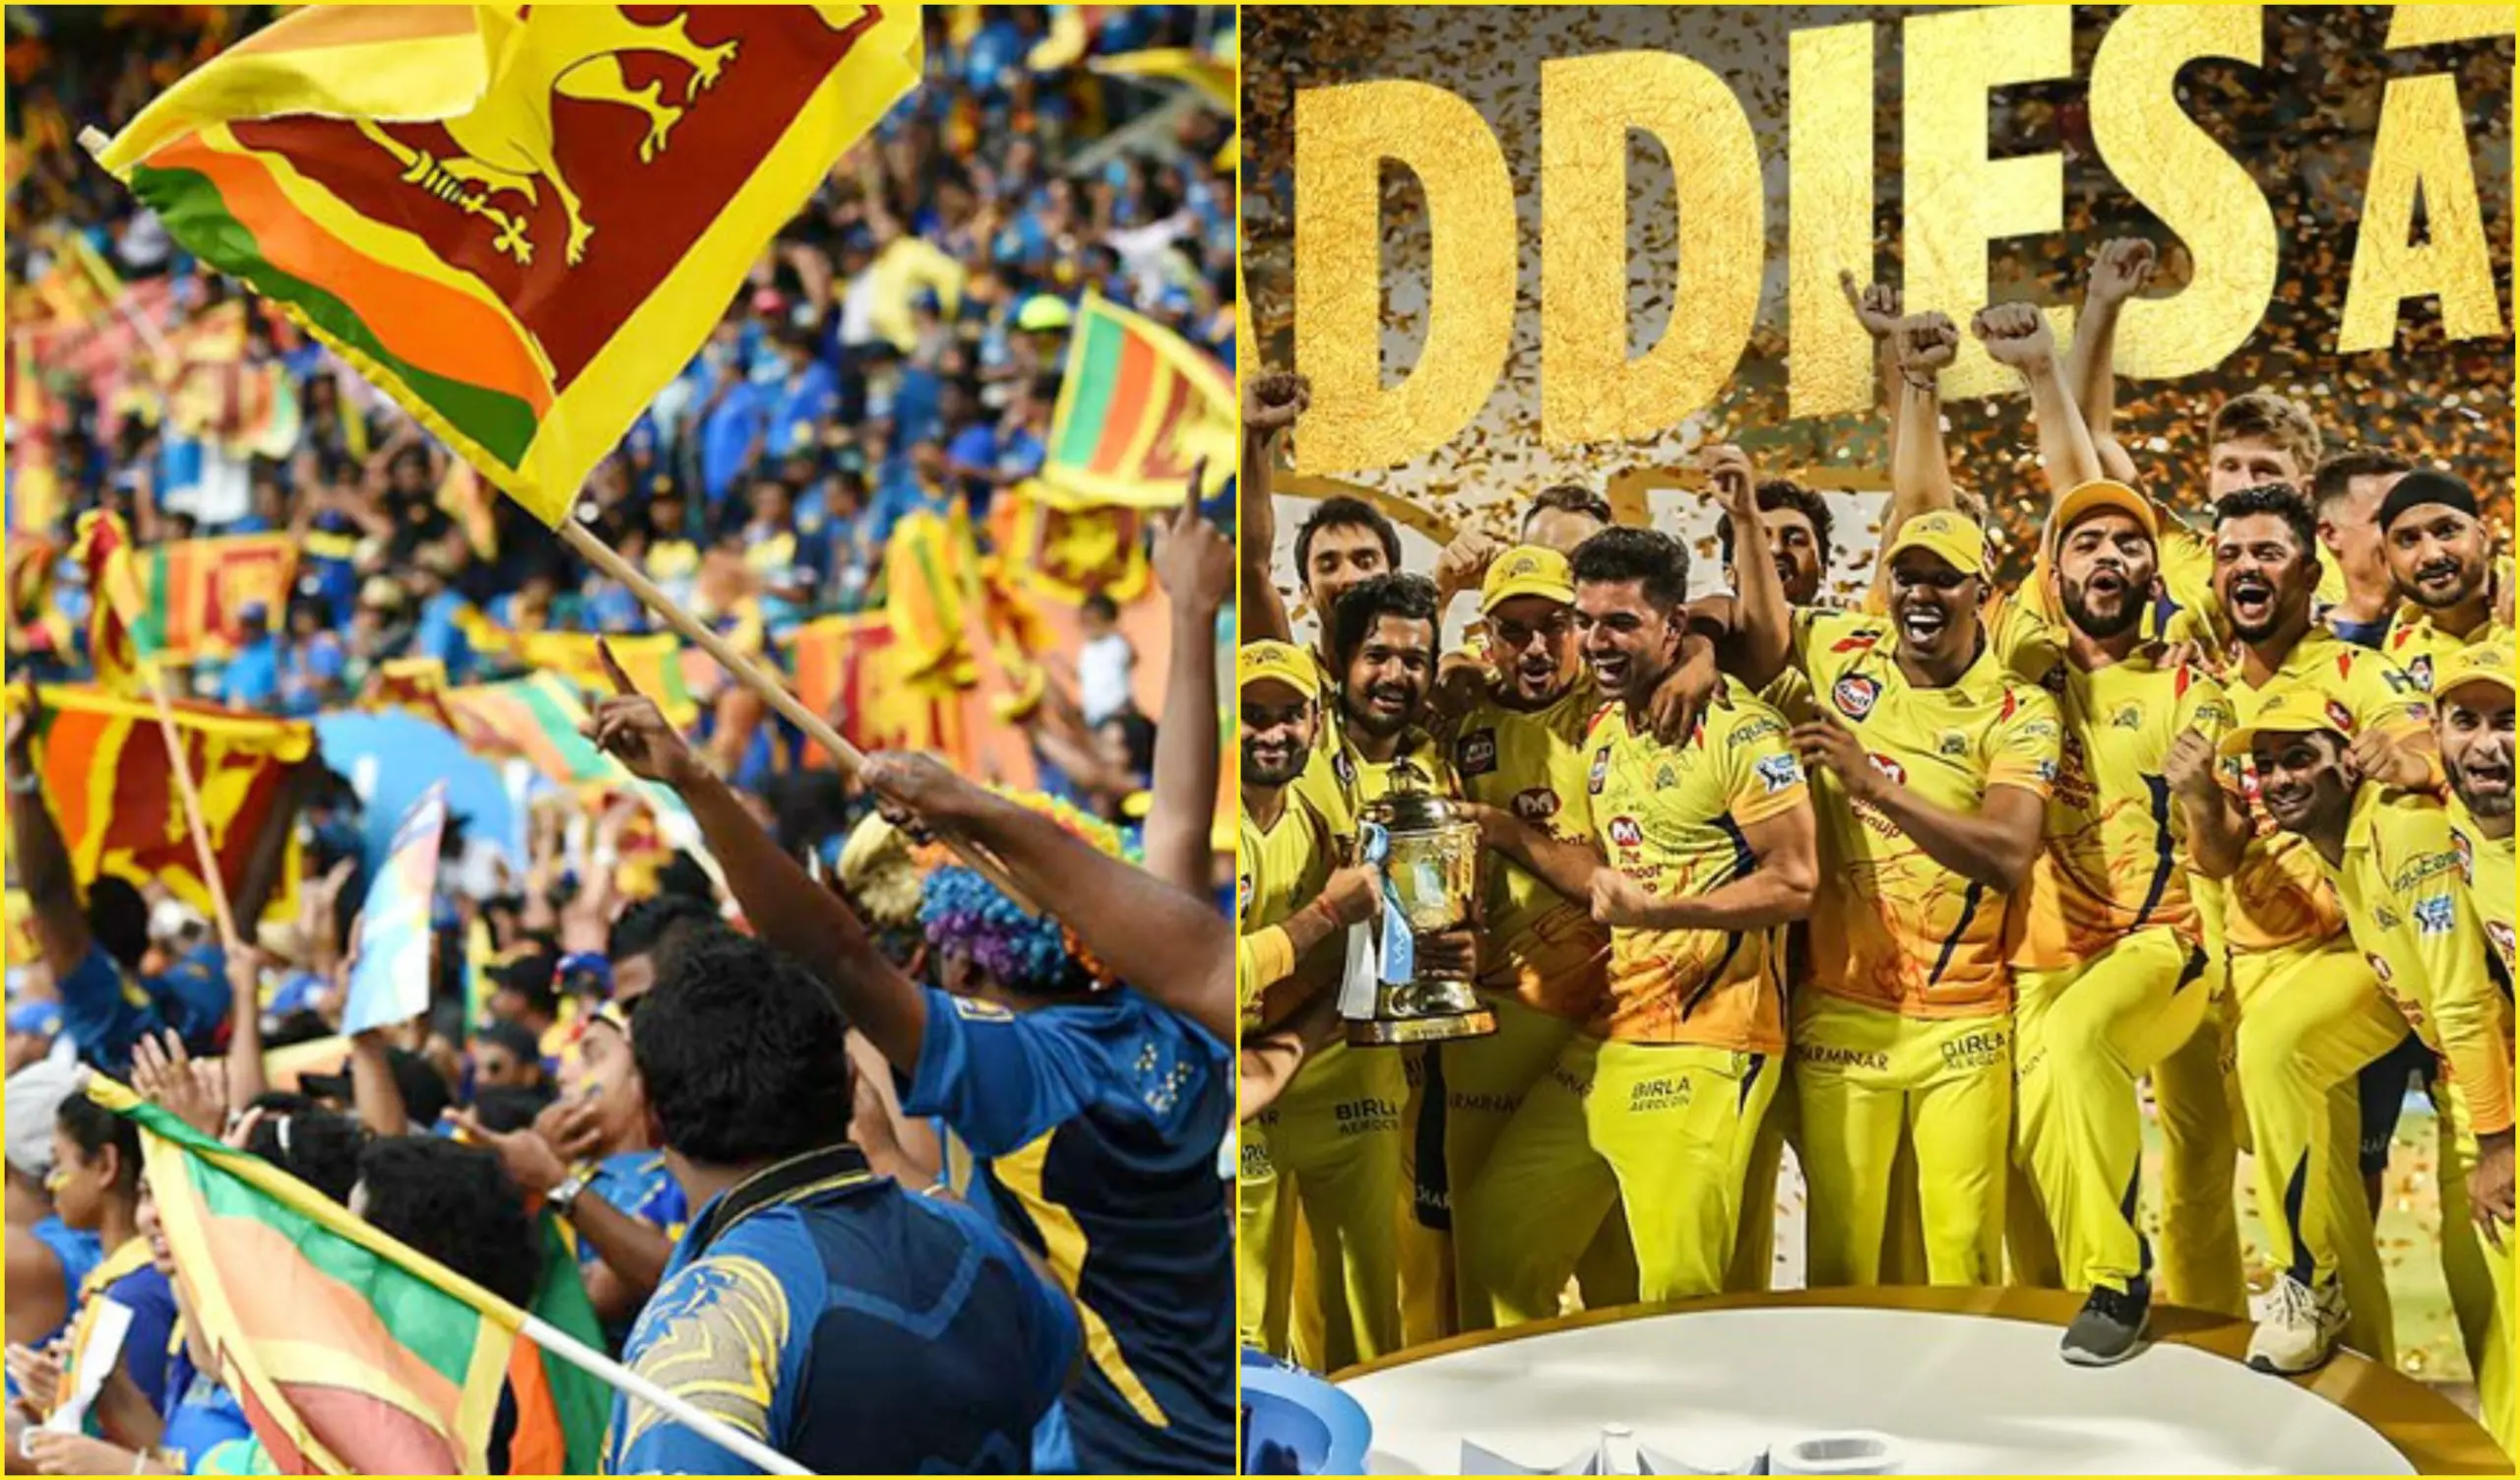 Lanka Premier League franchises inspired by IPL franchises names. Image courtesy: CricketLIveScores